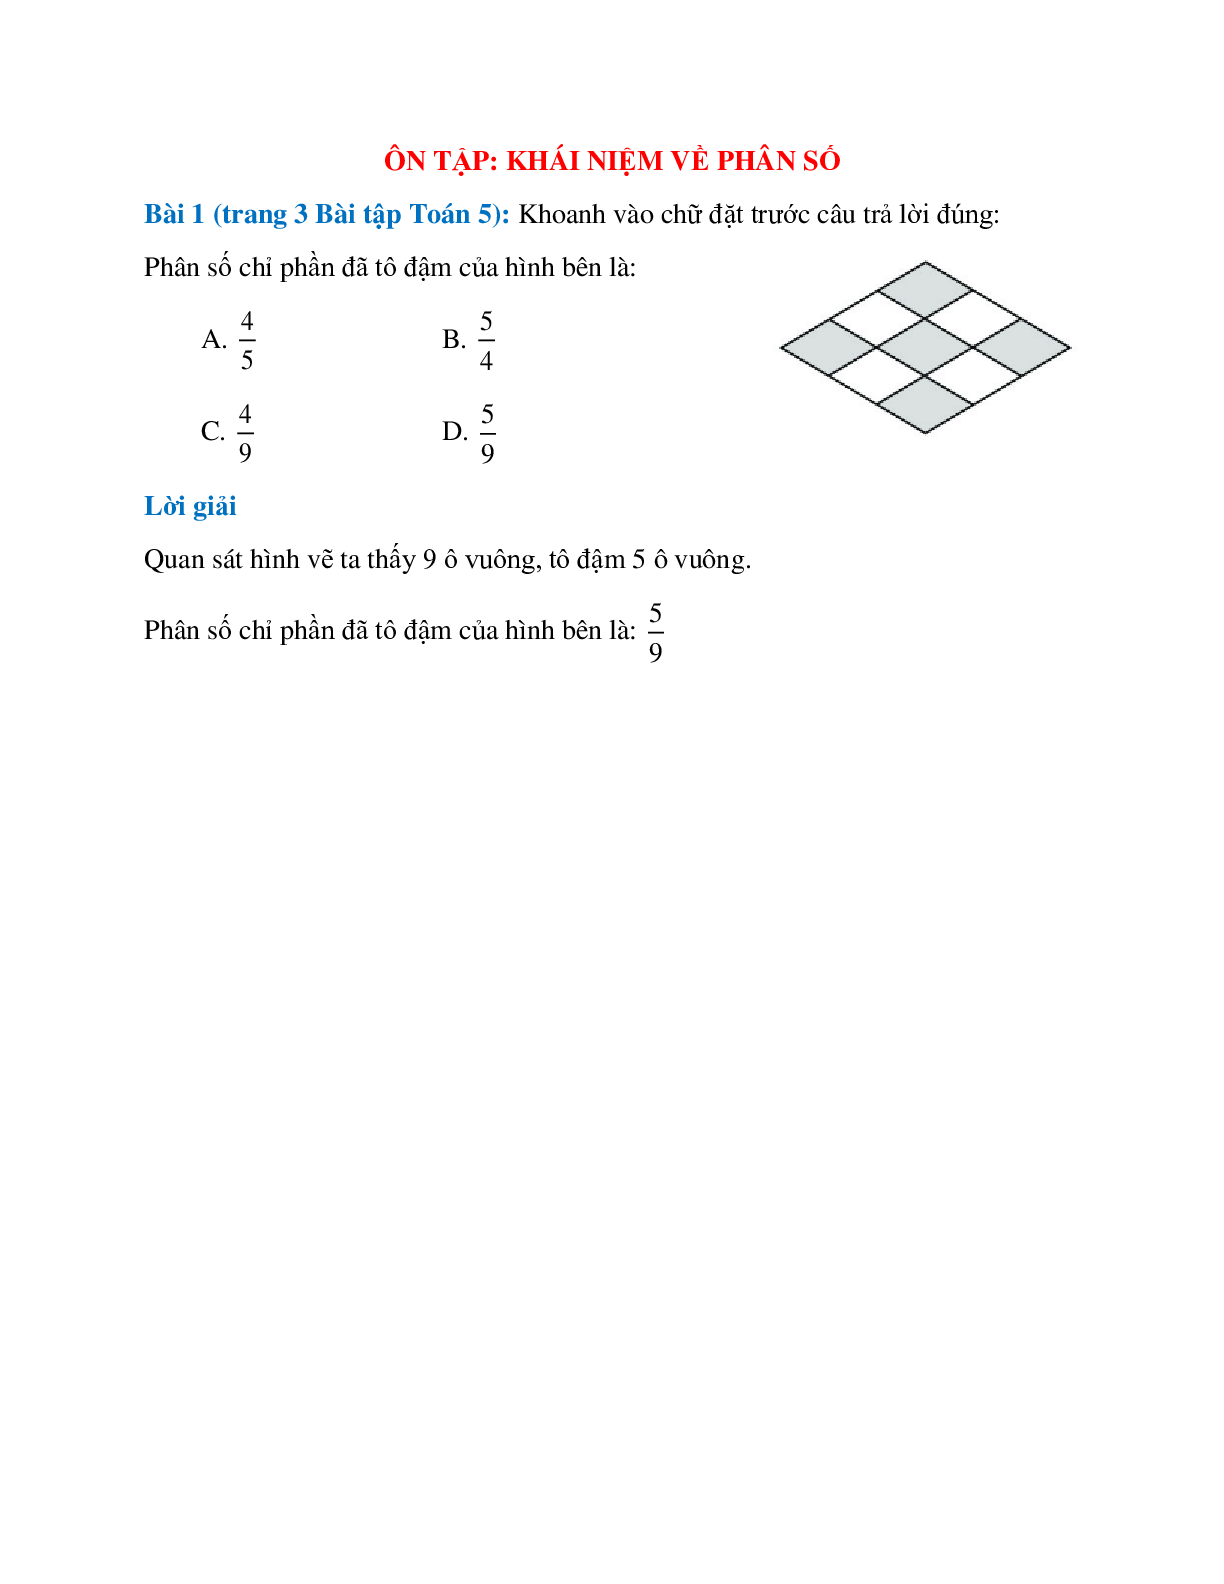 Khoanh vào chữ đặt trước câu trả lời đúng: Phân số chỉ phần đã tô đậm của hình bên (trang 1)